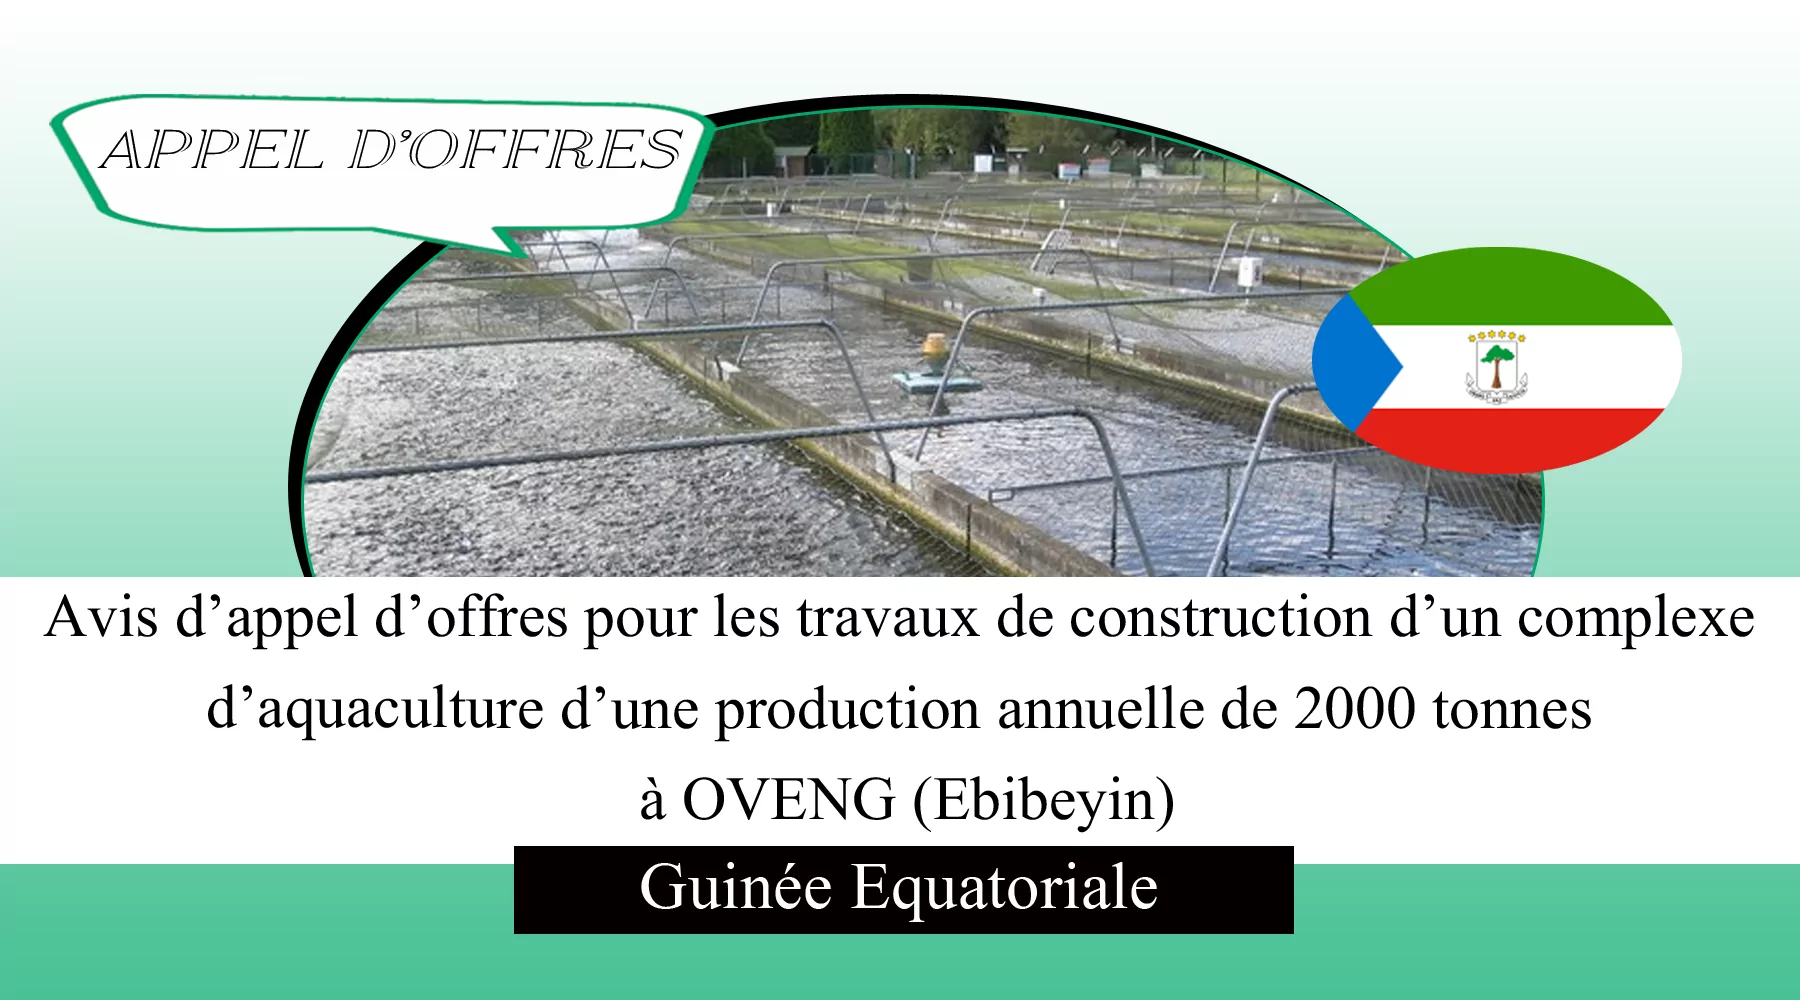 Avis d’appel d’offres pour les travaux de construction d’un complexe d’aquaculture d’une production annuelle de 2000 tonnes à OVENG (Ebibeyin), Guinée Equatoriale